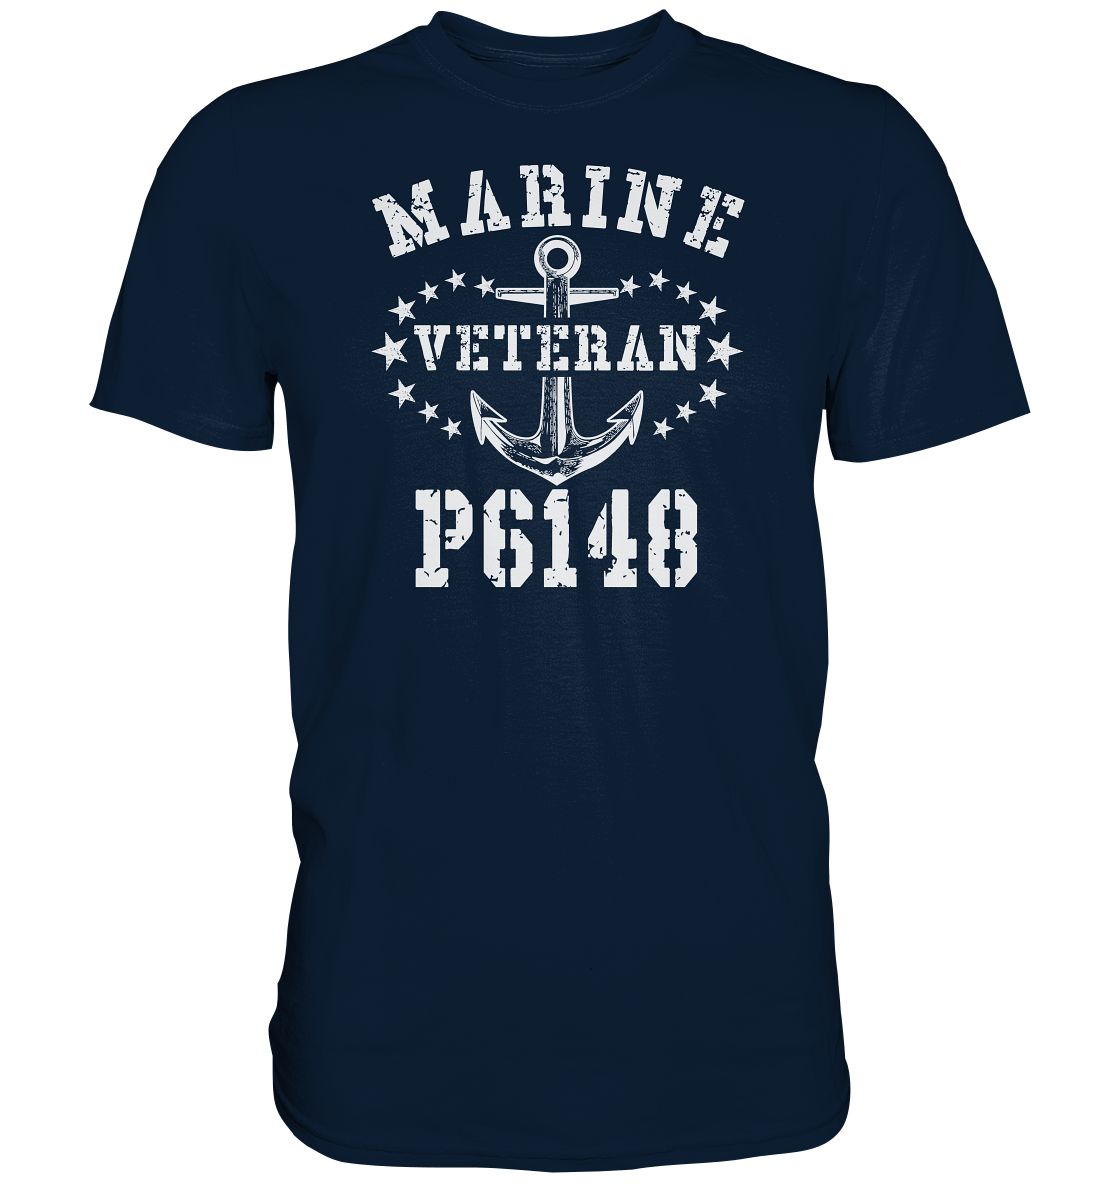 Veteran P6148 - Premium Shirt